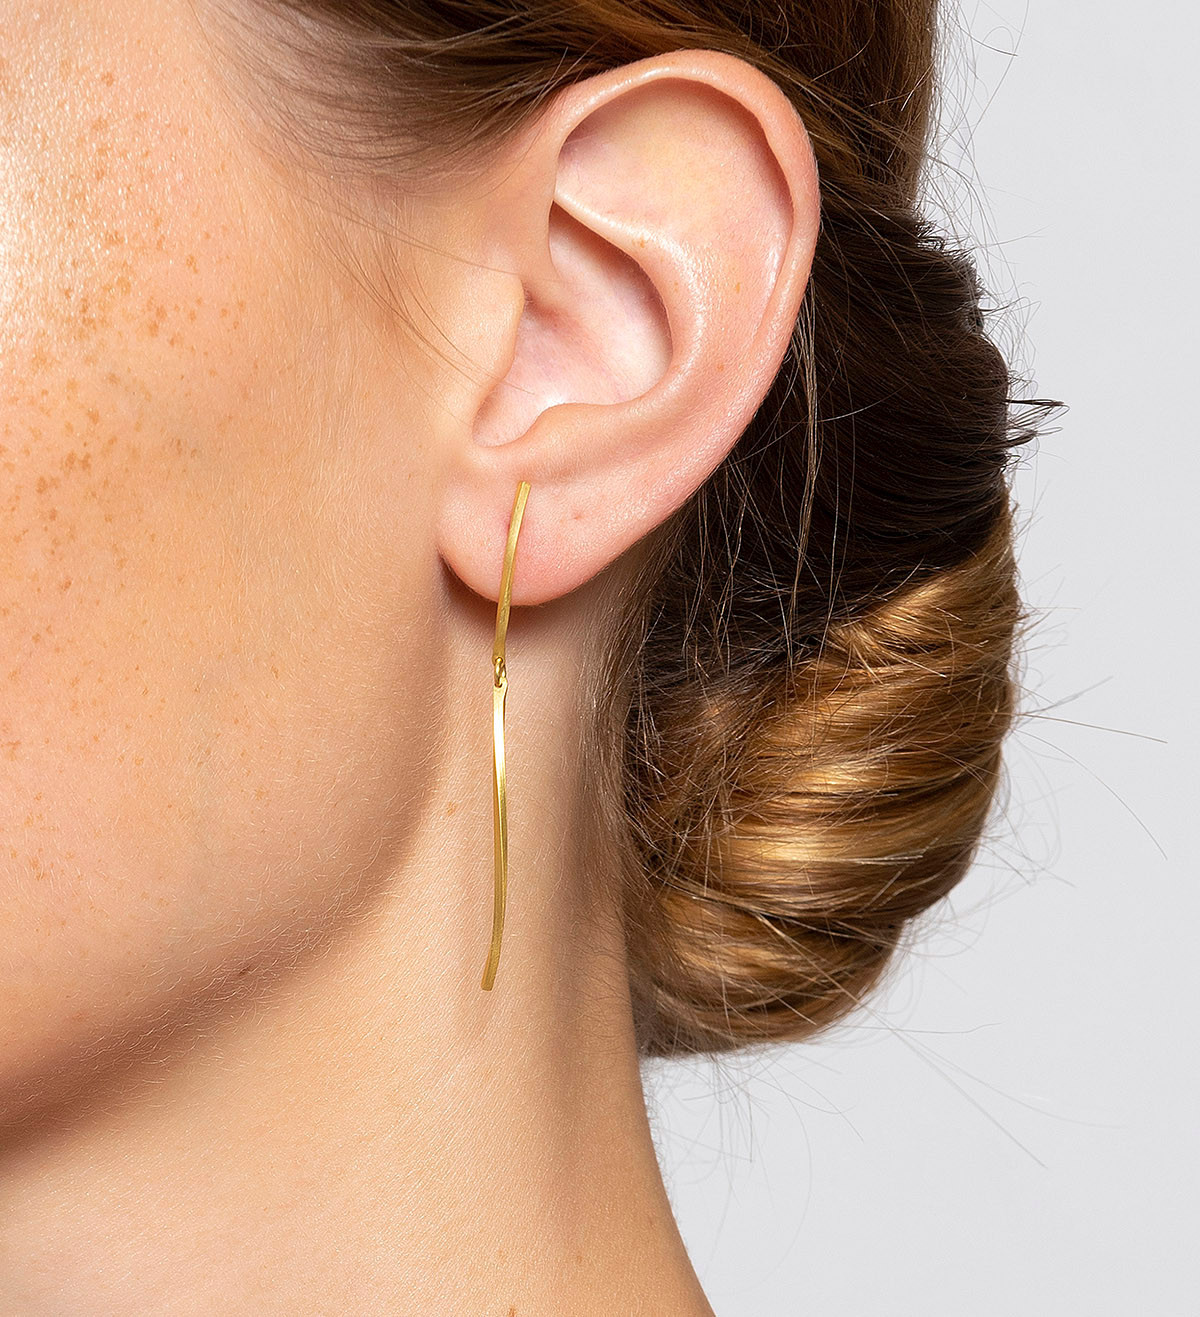 18k gold earrings Pinassa 80mm